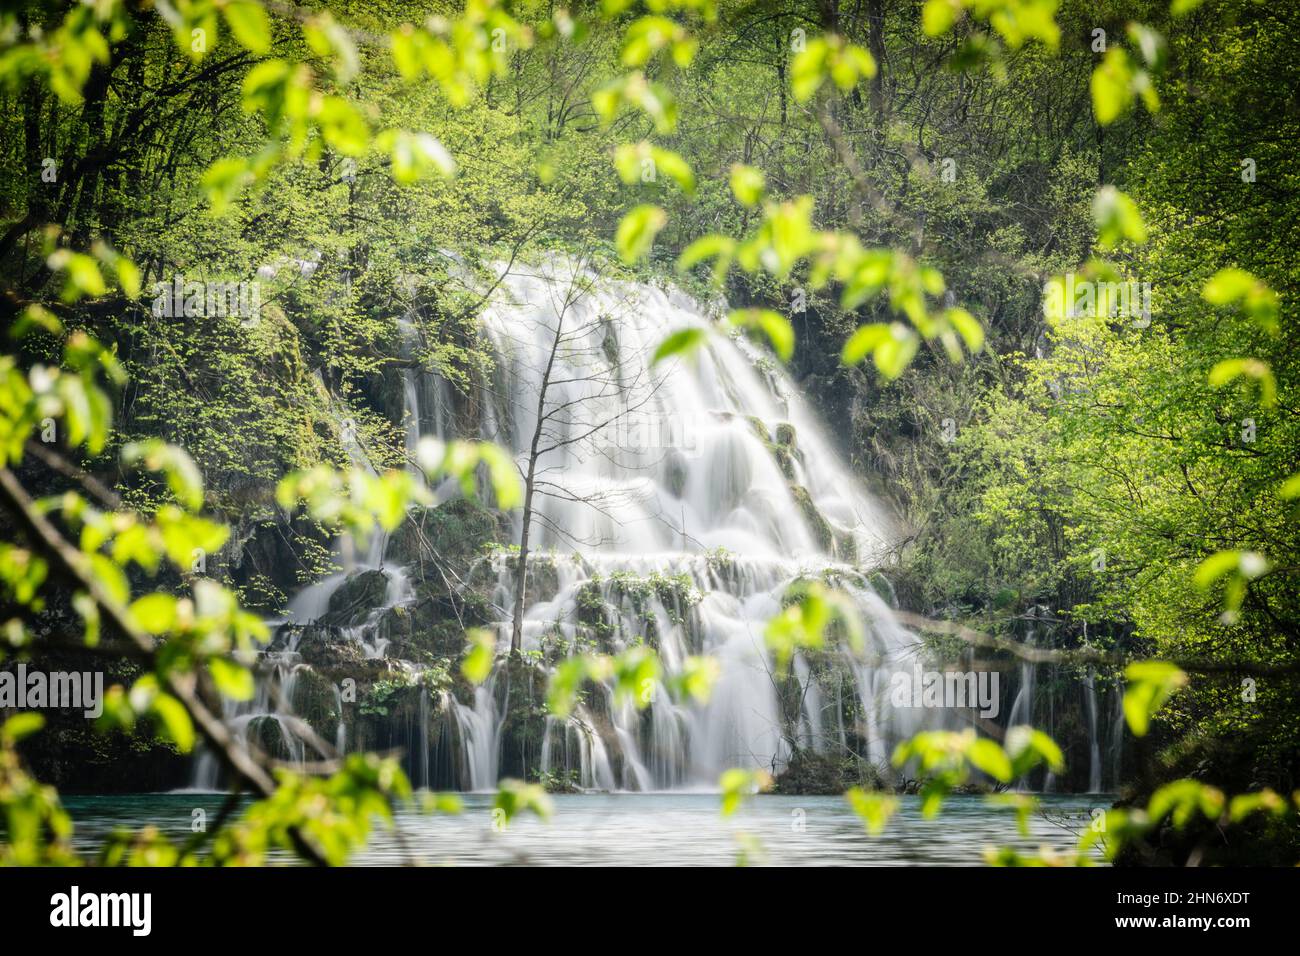 Parque Nacional de los Lagos de Plitvice, Patrimonio Mundial de la UNESCO, Croacia, europa Stock Photo